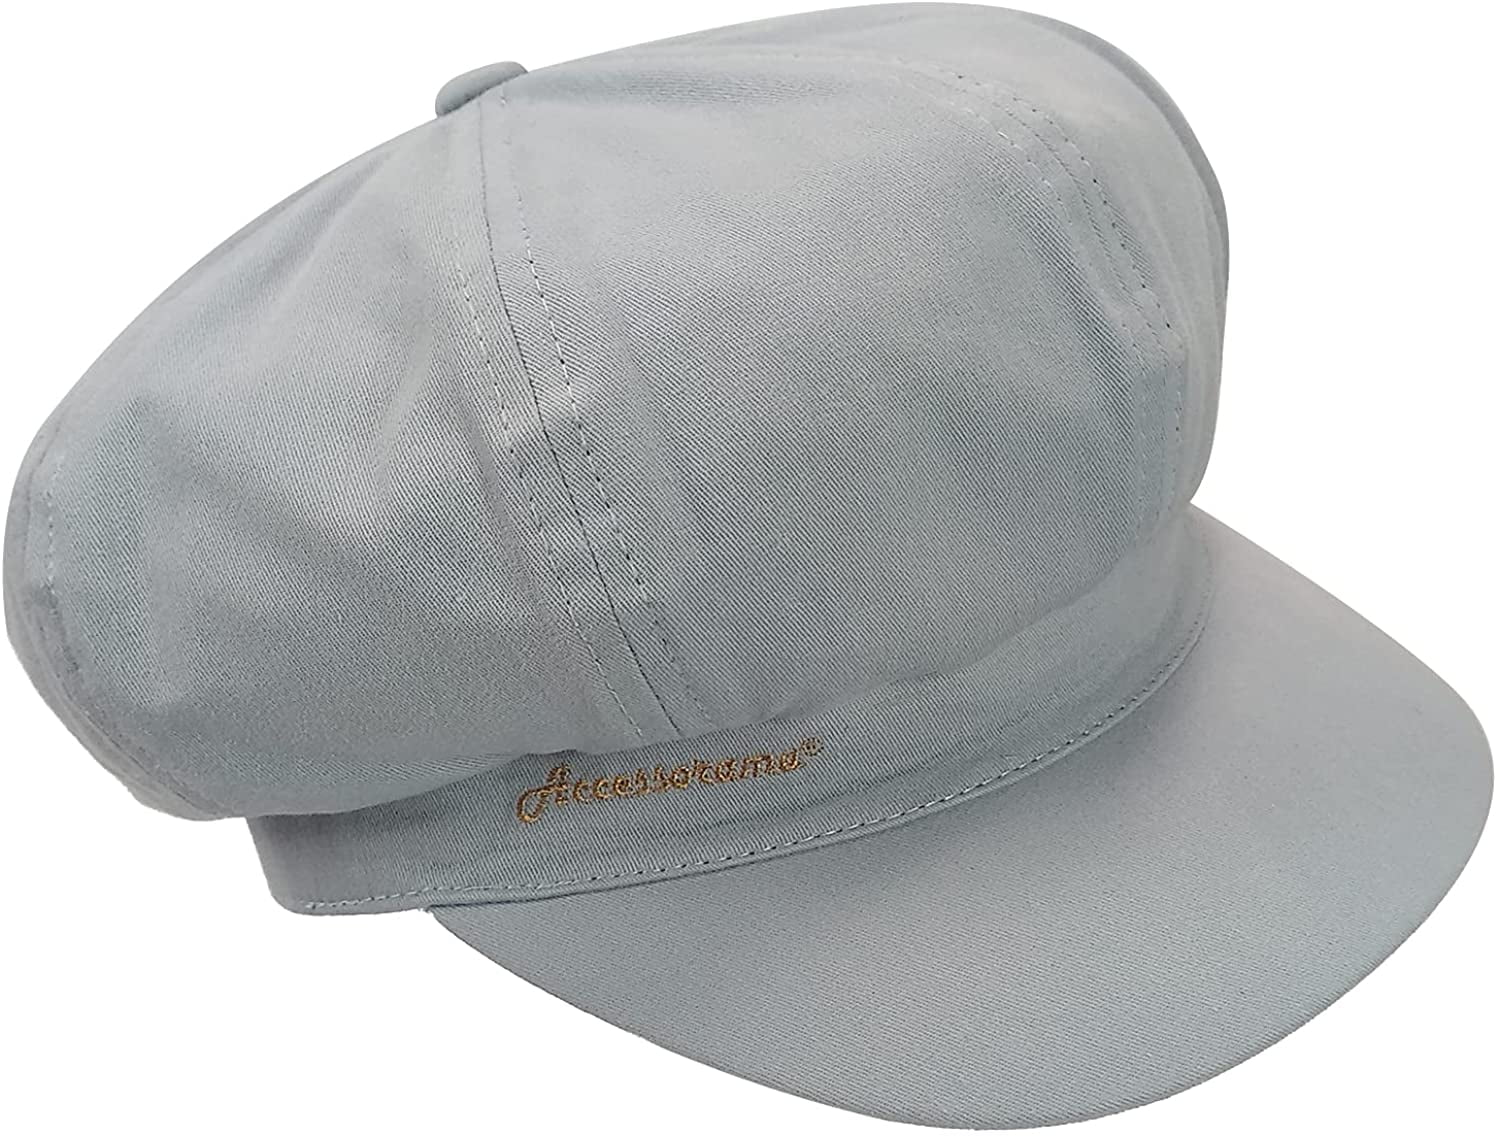 Accessorama Summer Newsboy Hats and Caps for Men&Women Adjustable Classic Visor Beret Cap Soft 